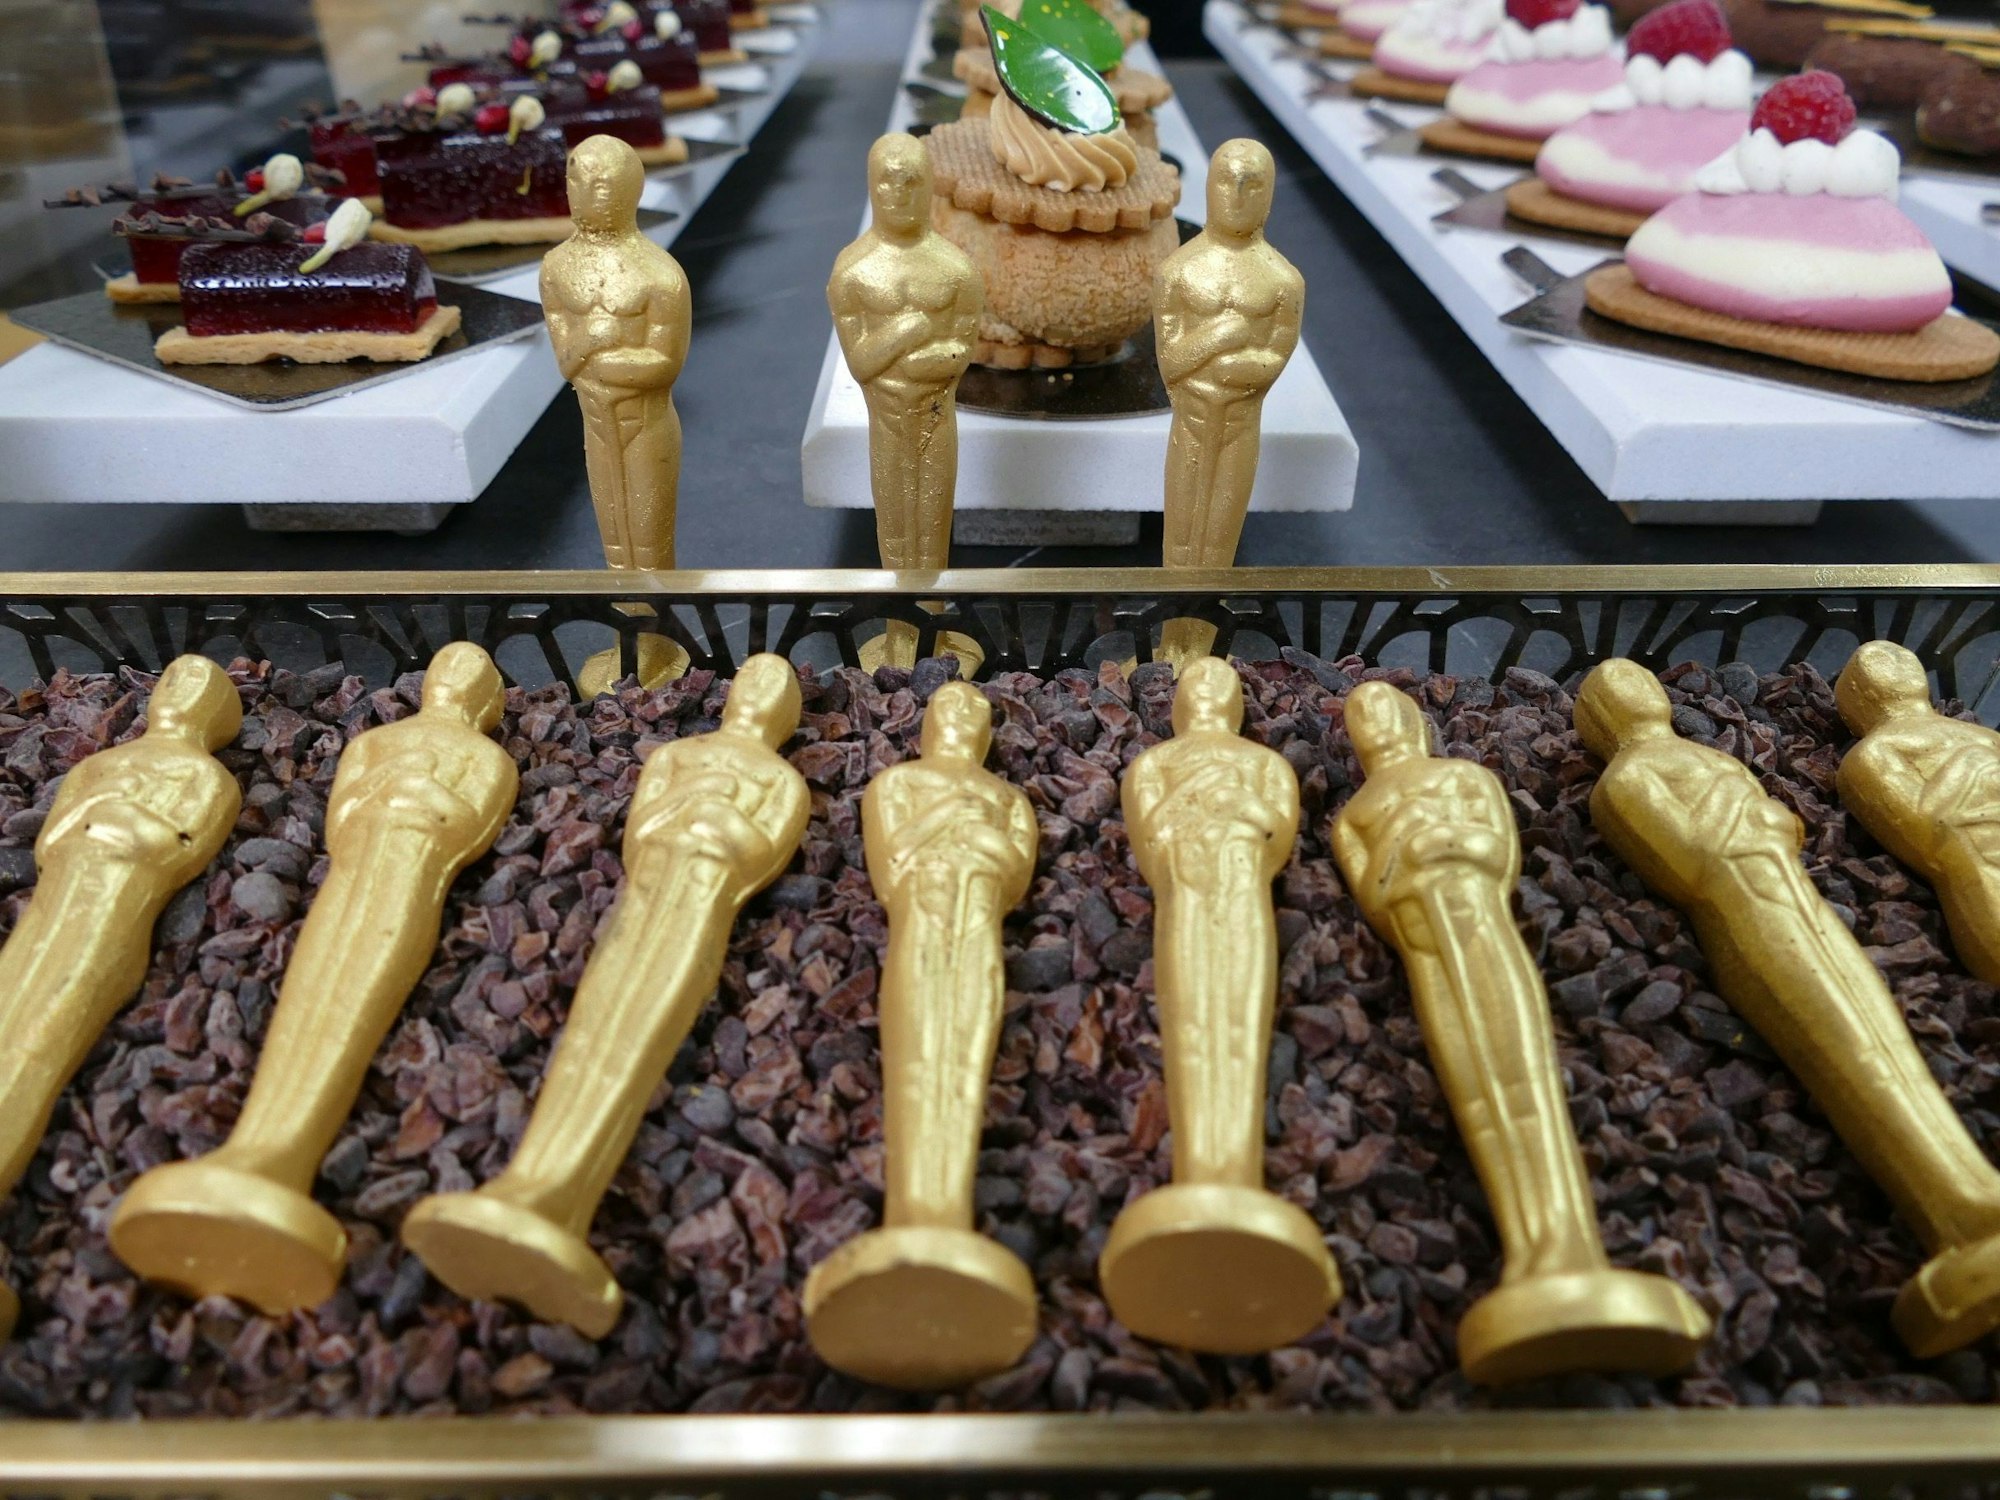 Mit Gold besprühte Oscar-Schoko-Figuren liegen in einem Beet aus Kakaobohnenschalen